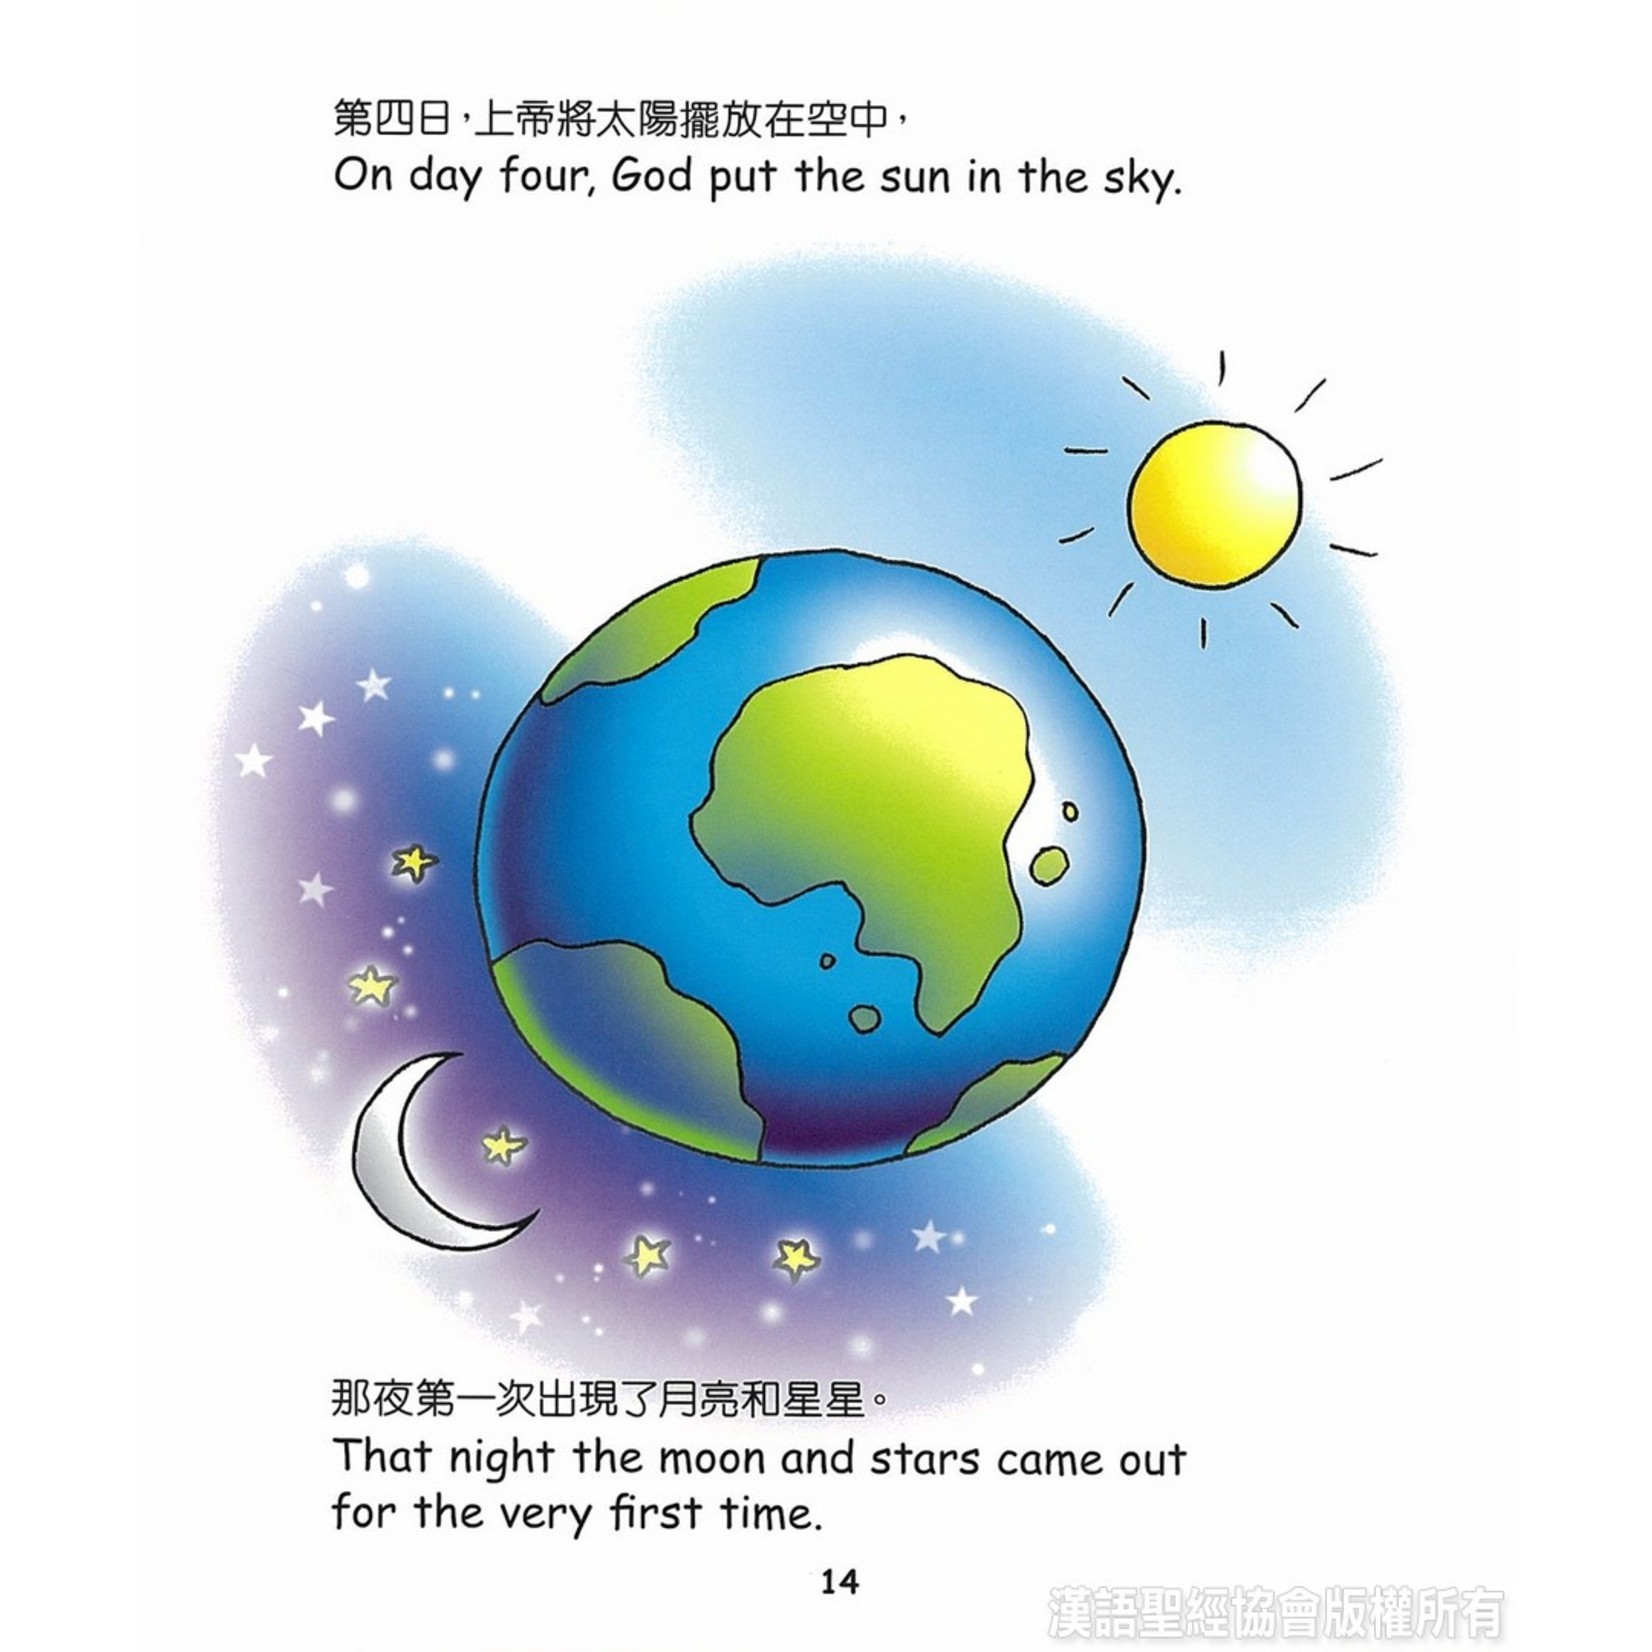 漢語聖經協會 Chinese Bible International 小淘氣聖經（中英對照）（繁體） BIBLE for Toddlers - Chinese/English (Hardcover)